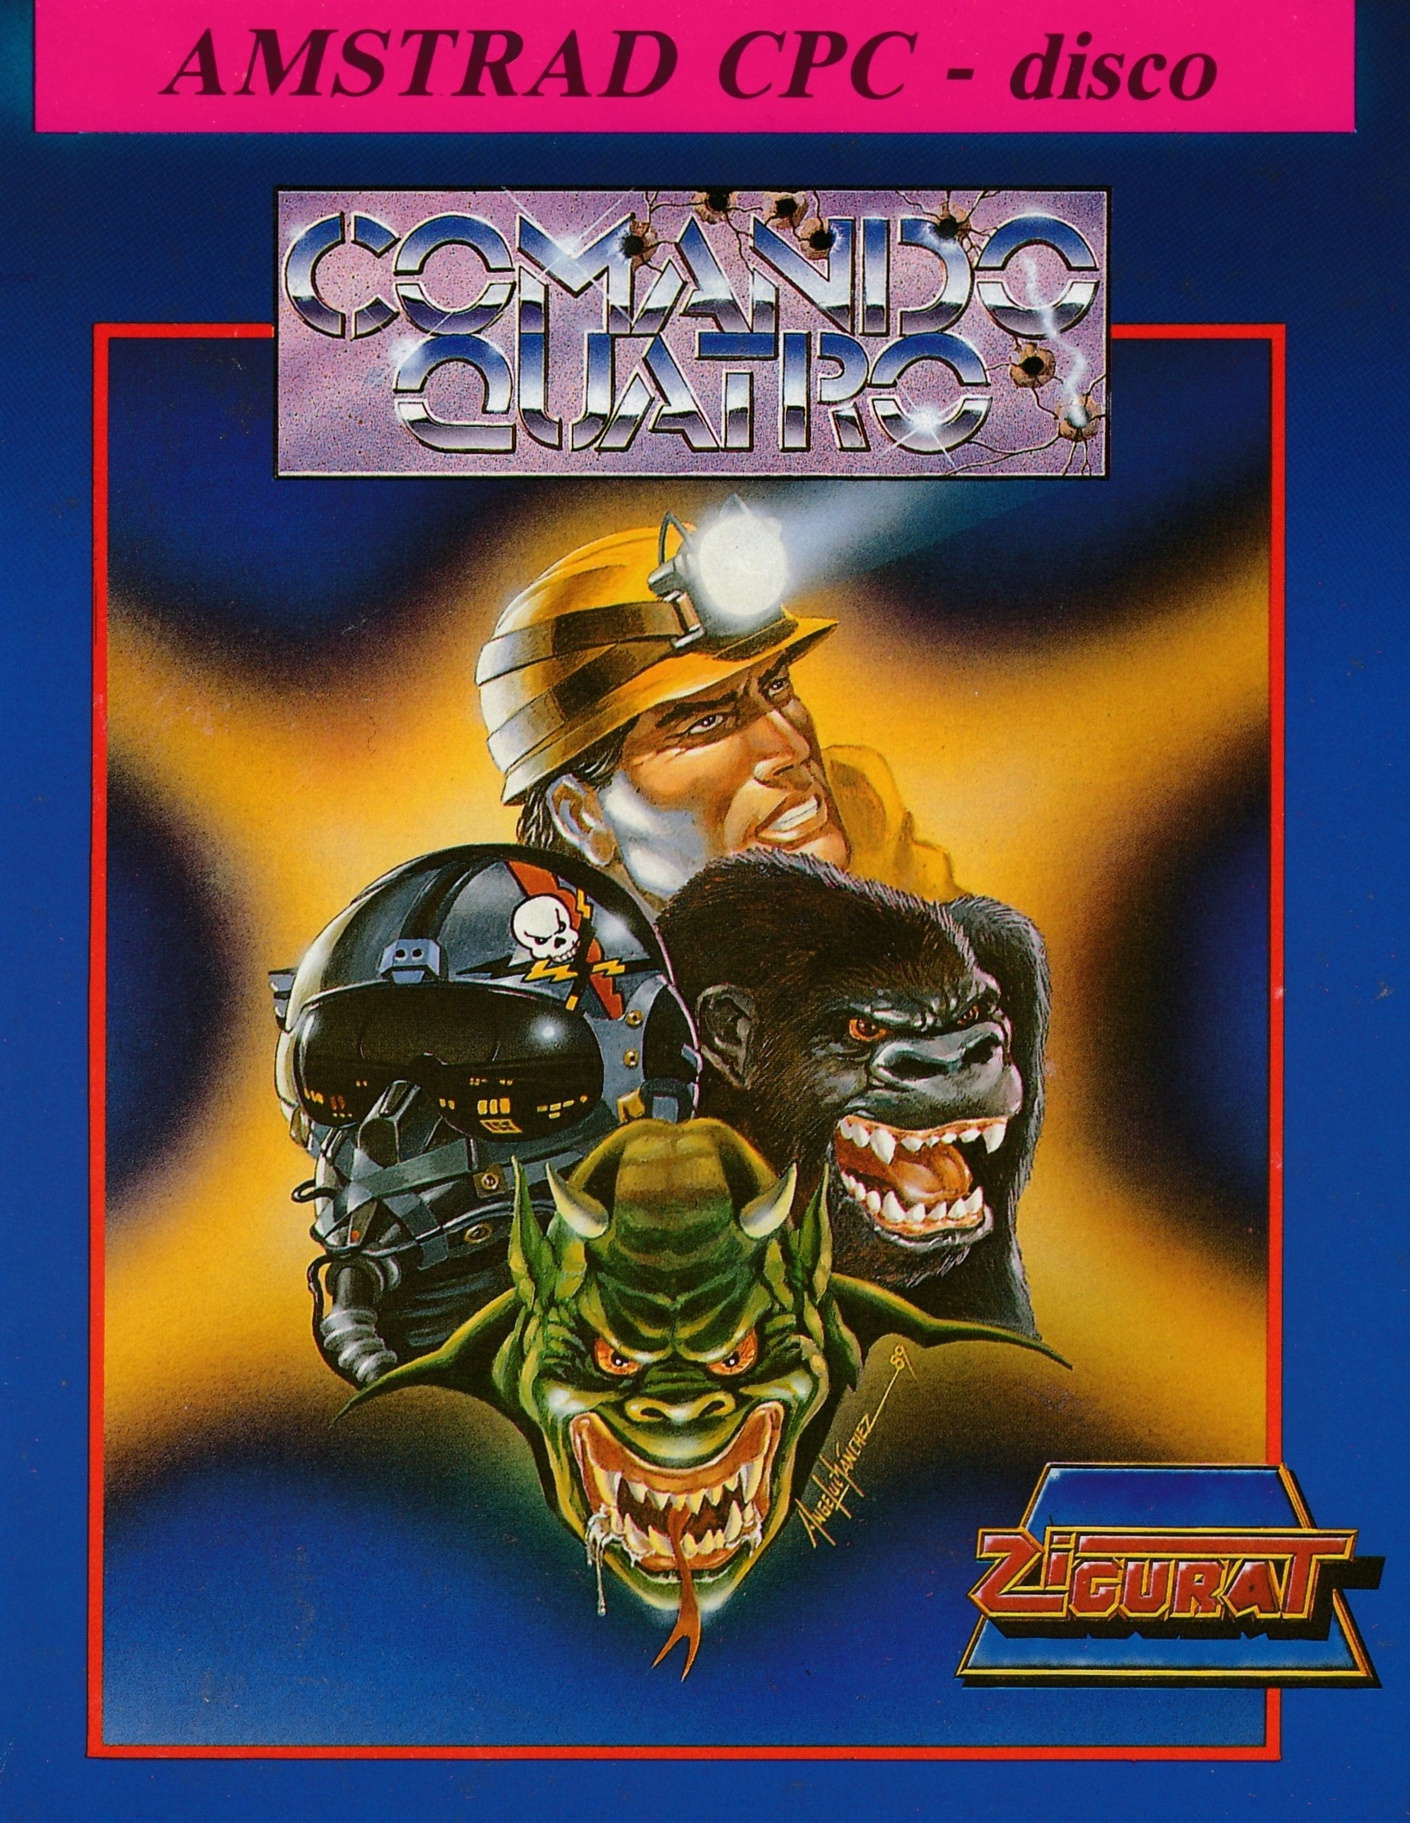 cover of the Amstrad CPC game Comando Quatro  by GameBase CPC